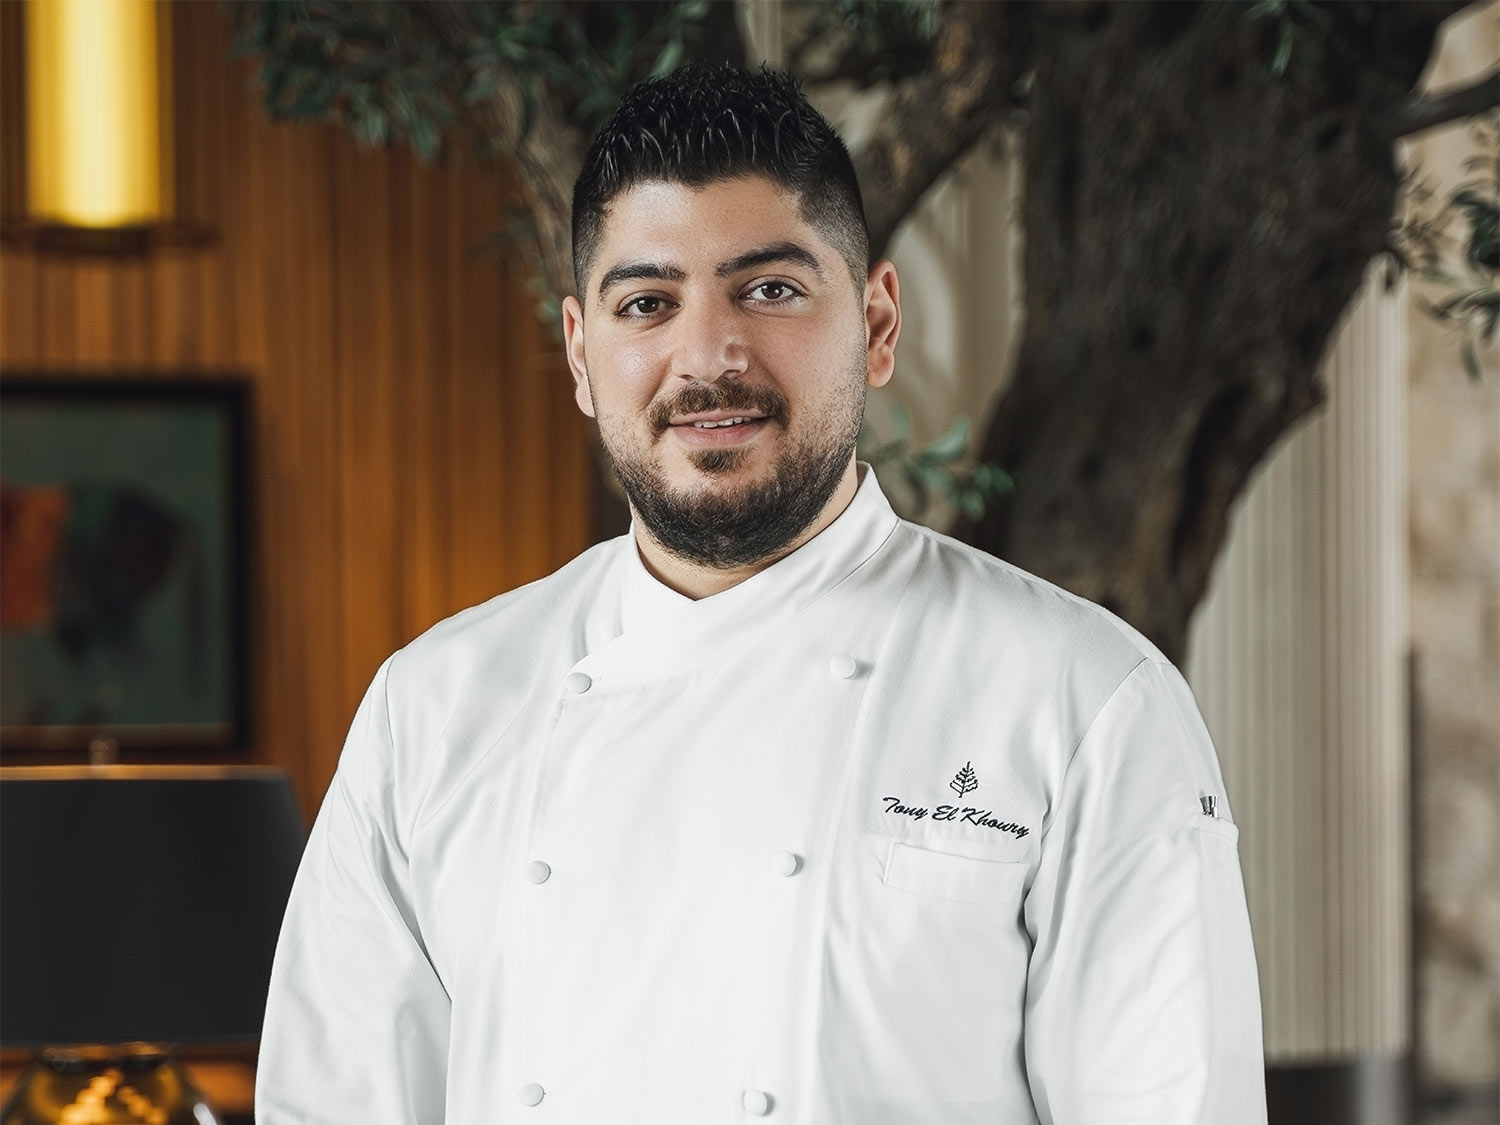 Tony El Khoury Speciality Chef at Four Seasons Hotel